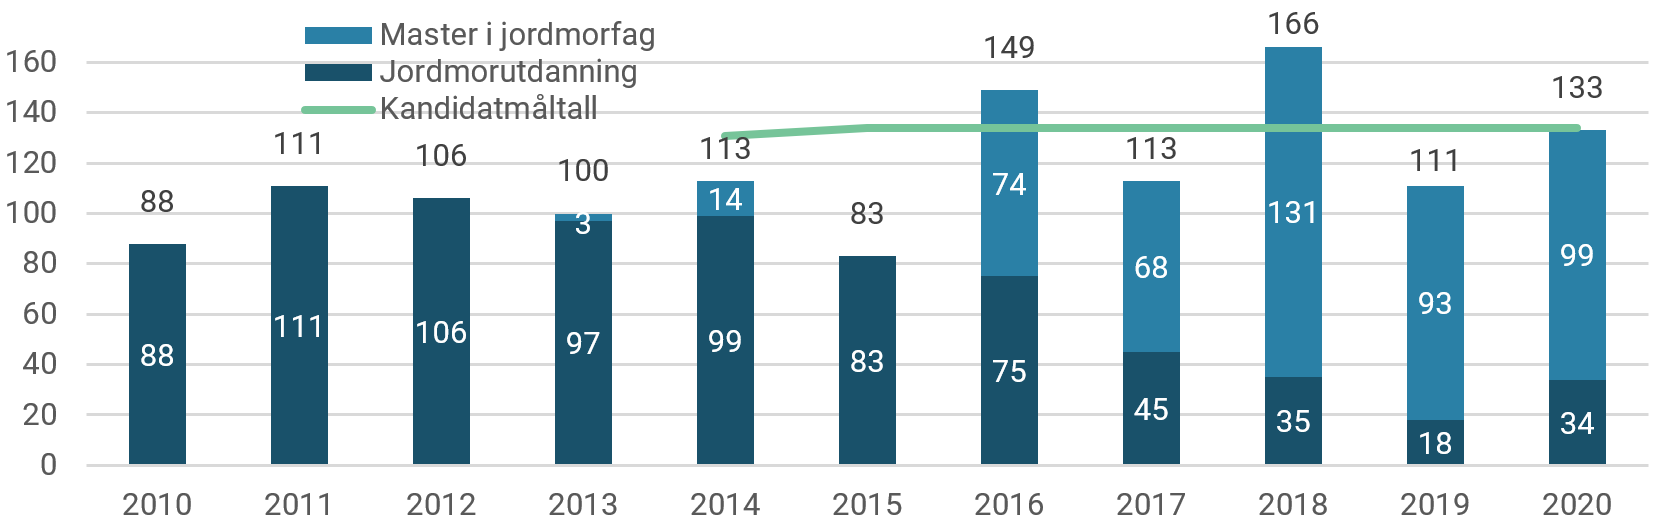 Antall fullførte videreutdanninger og mastergrader i jordmorfag, 2010-2020.